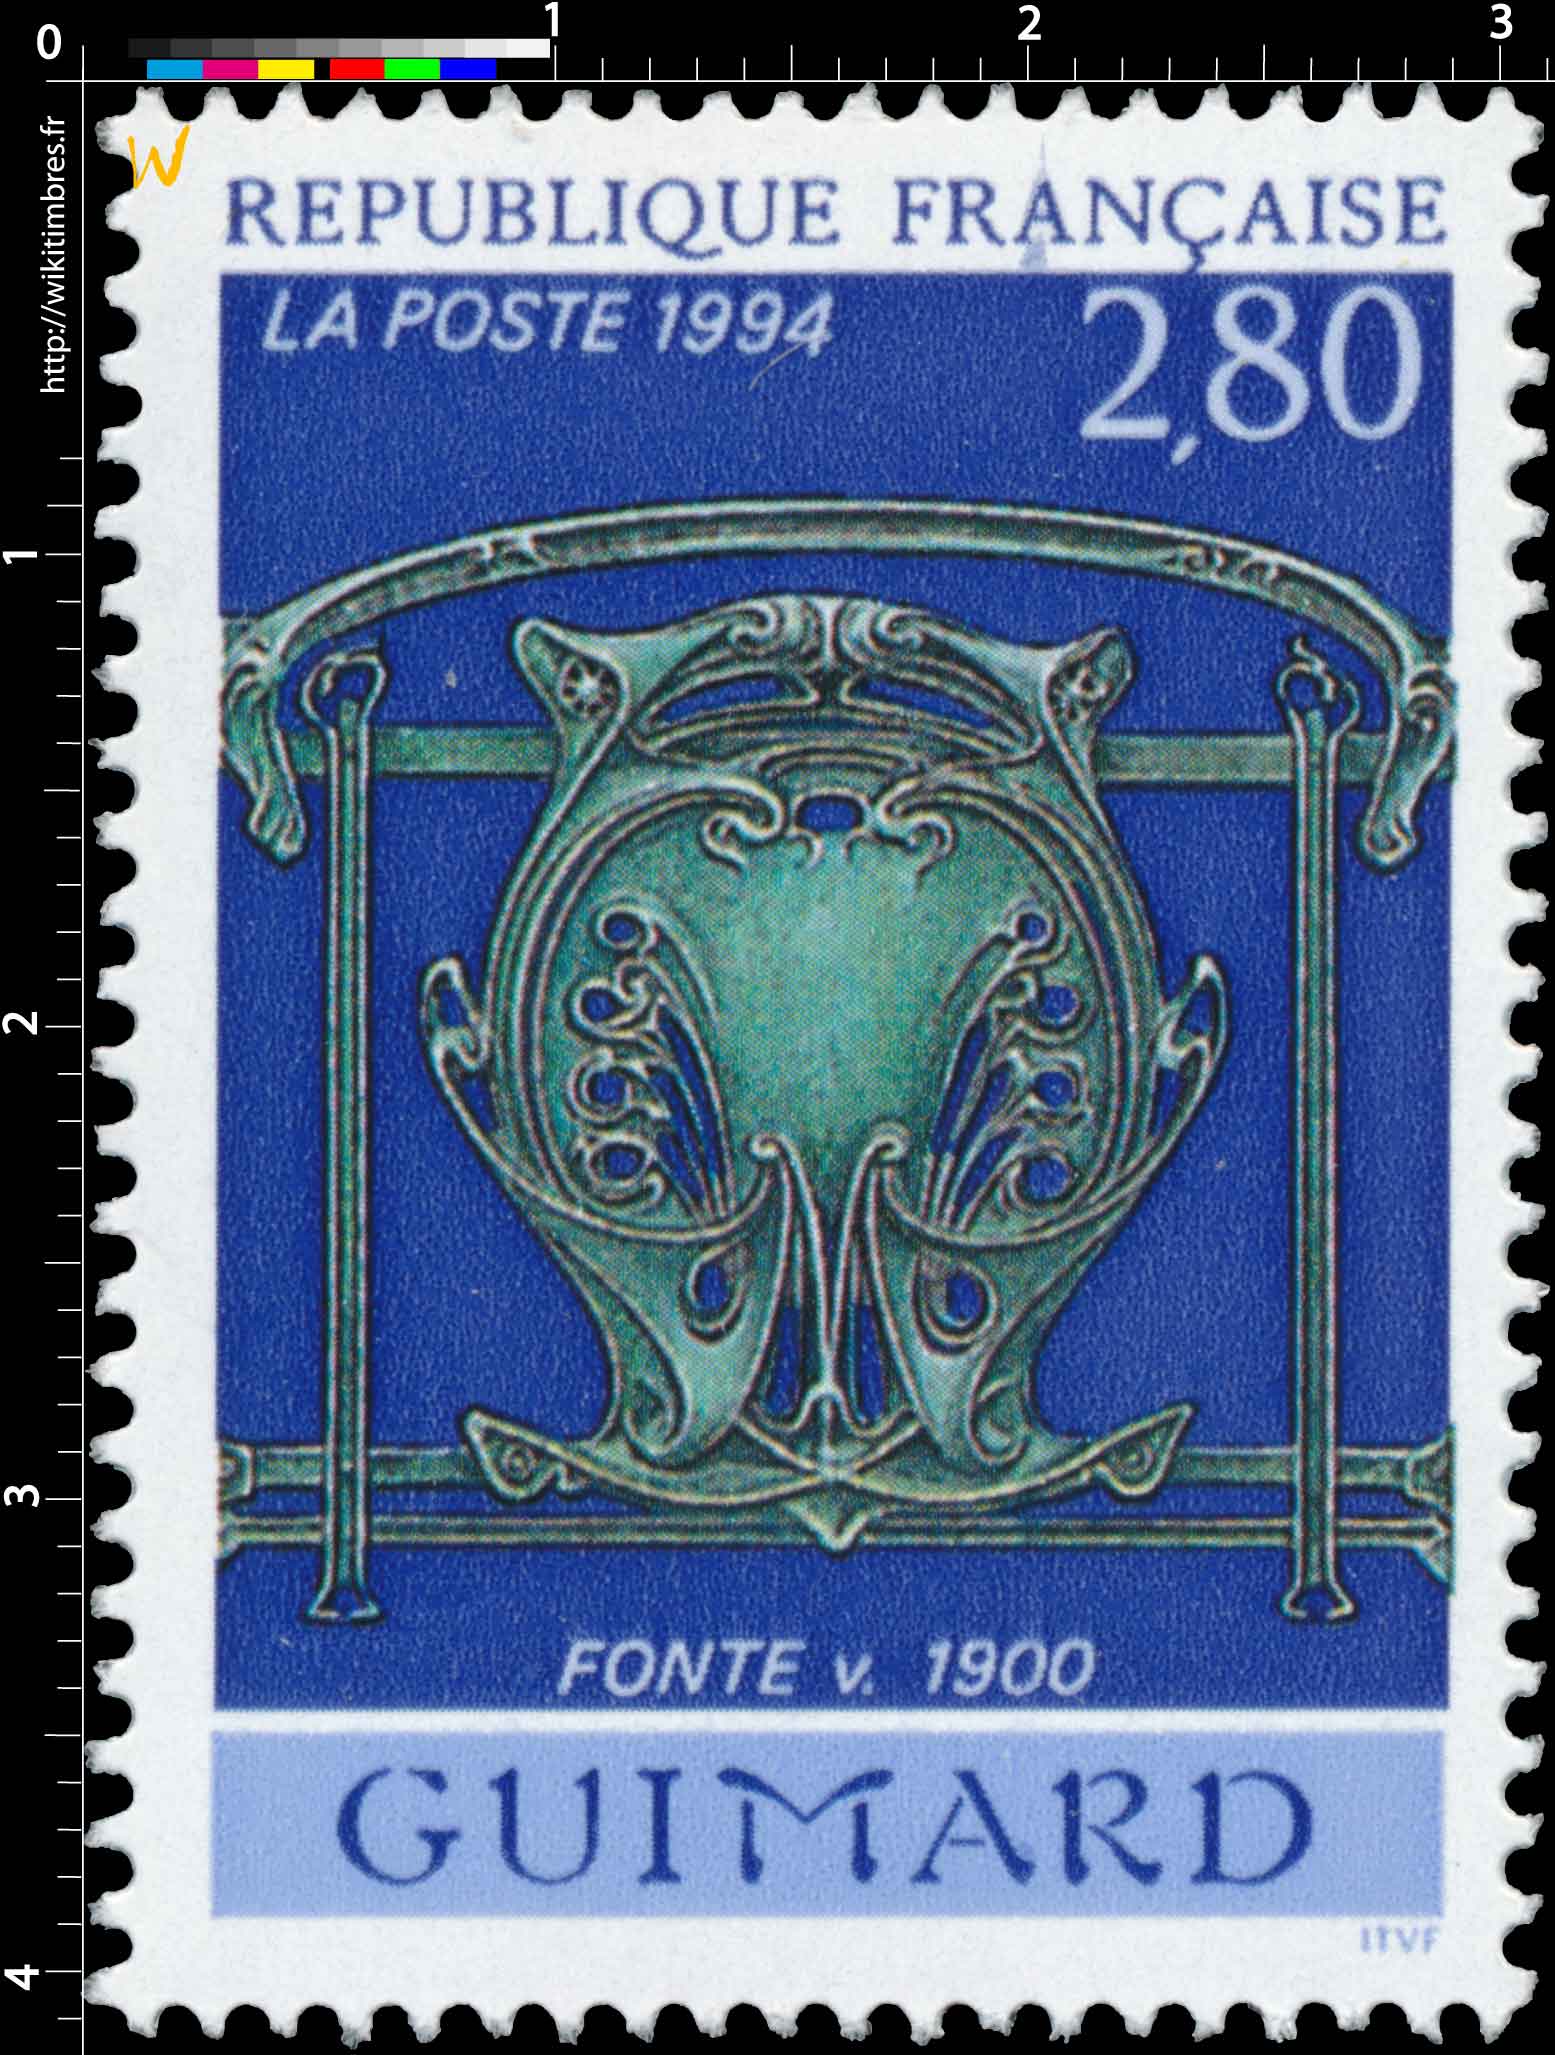 1994 GUIMARD FONTE v. 1900